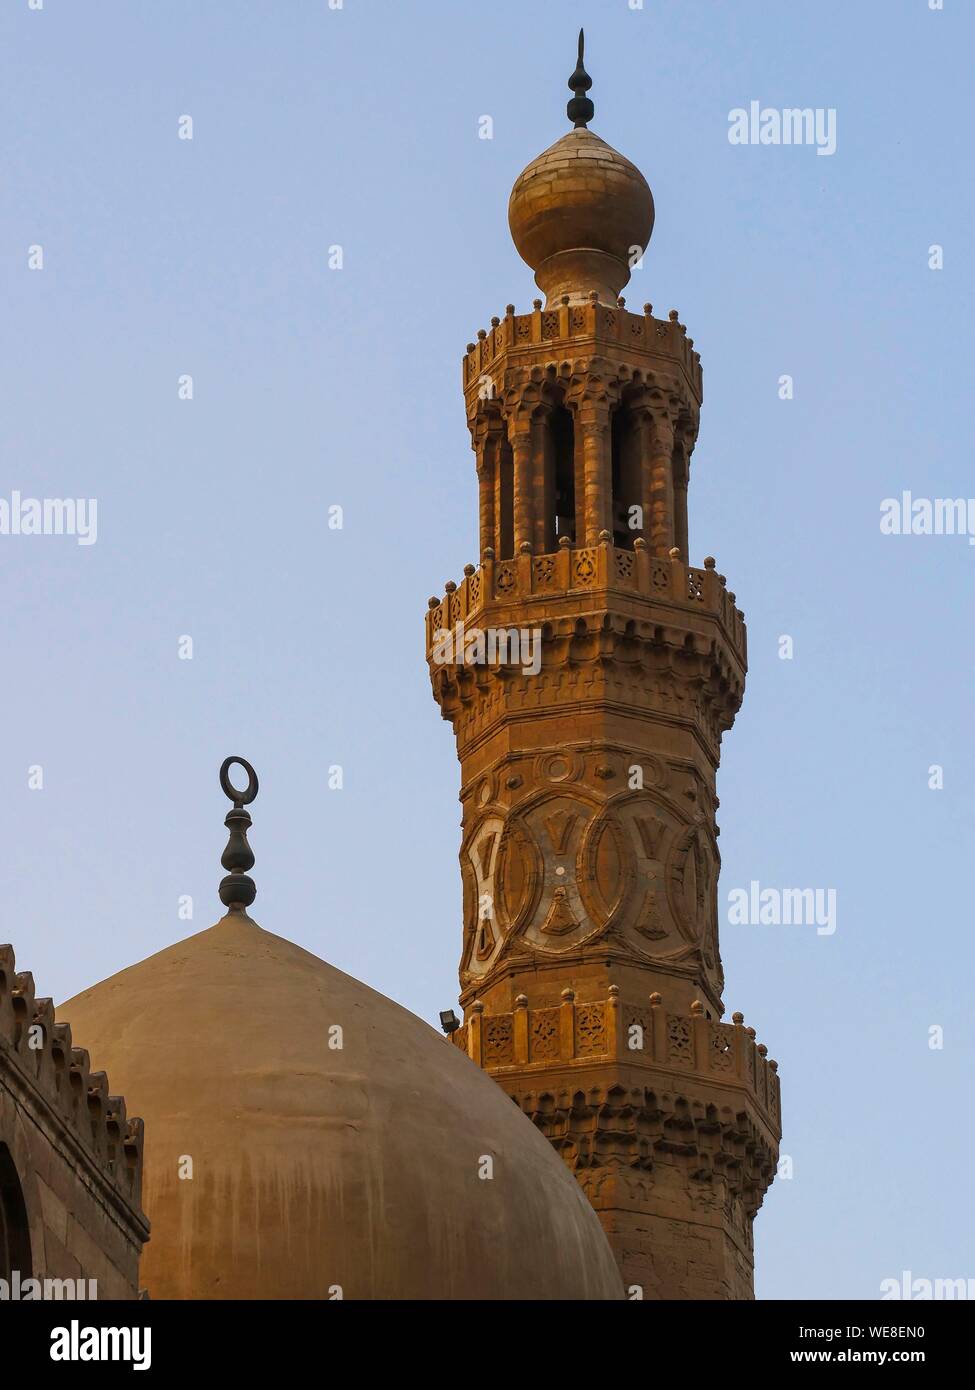 Egypt, Cairo, The minaret of Sultan Barquq's Madrassa Mosque in Muizz Street or Al Moez Ldin Allah Al Fatimi Stock Photo